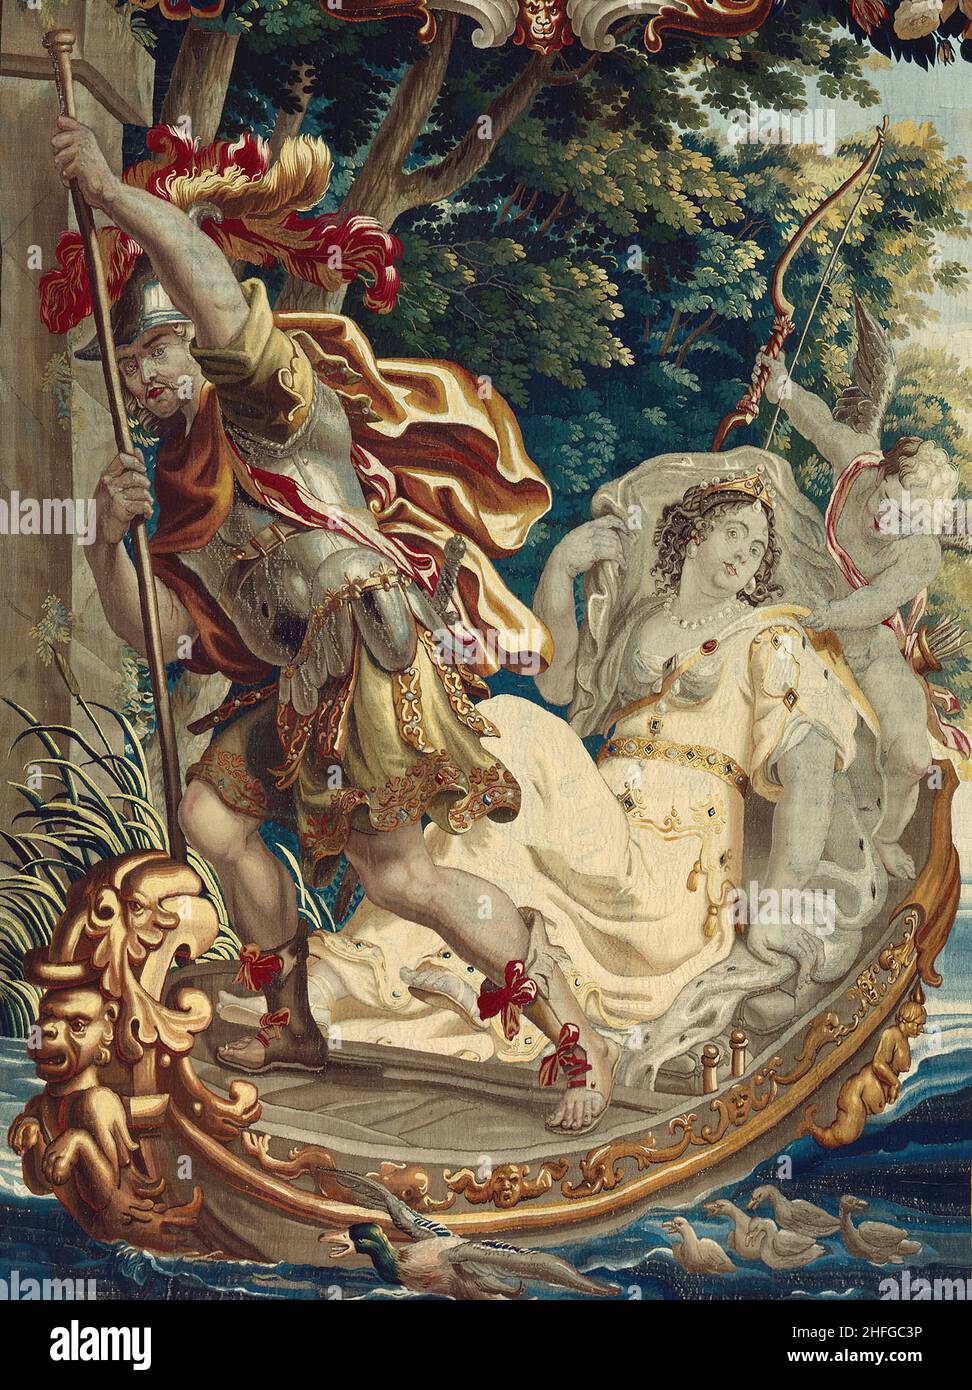 Cleopatra bat, Rom Tribut zu zahlen, aus 'The Story of Caesar and Cleopatra', Flandern, c. 1680. Nach einem Entwurf von Justus van Egmont in der Werkstatt von Willem van Leefdael gewebt. Detail aus einem größeren Kunstwerk. Stockfoto